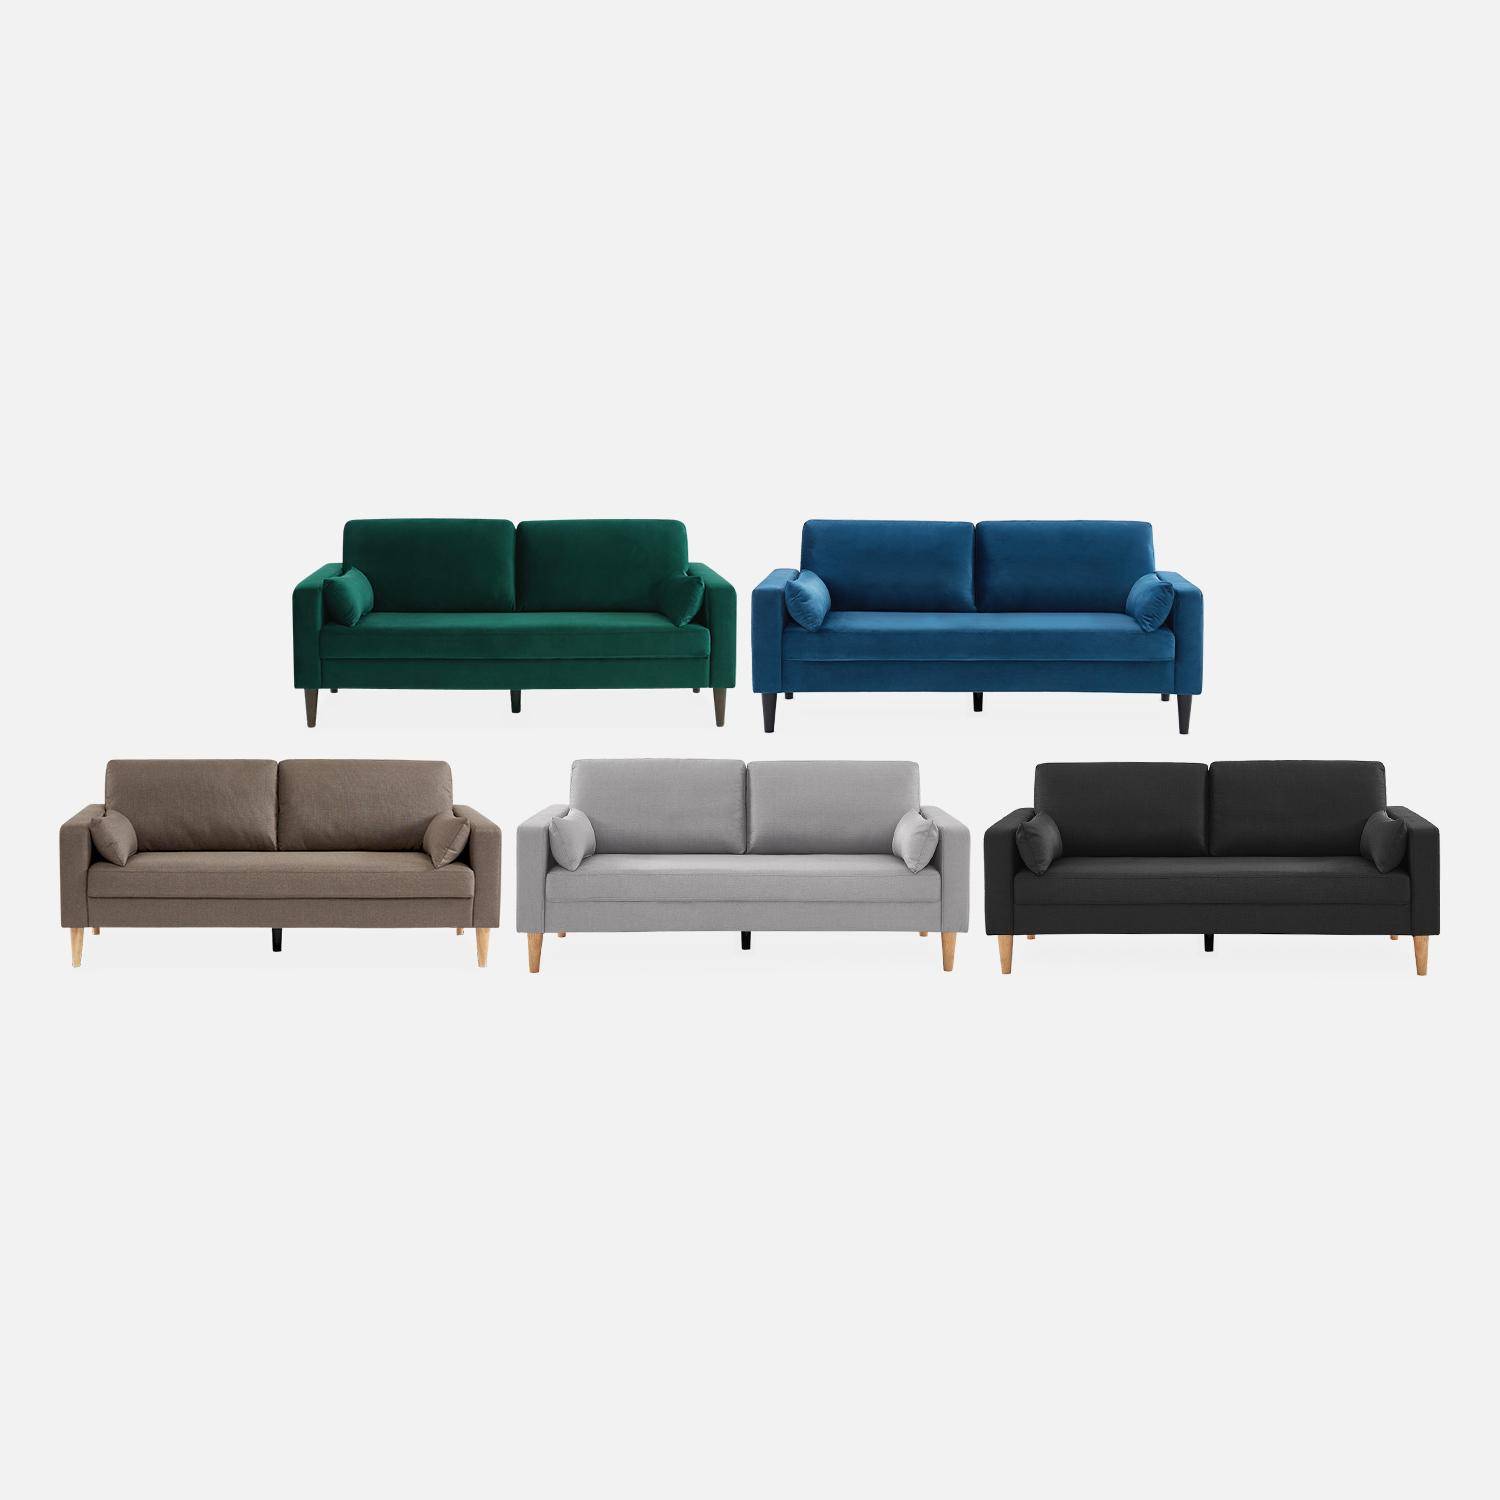 Lichtgrijze stoffen driezits sofa - Bjorn - 3-zits bank met houten poten, scandinavische stijl   Photo6